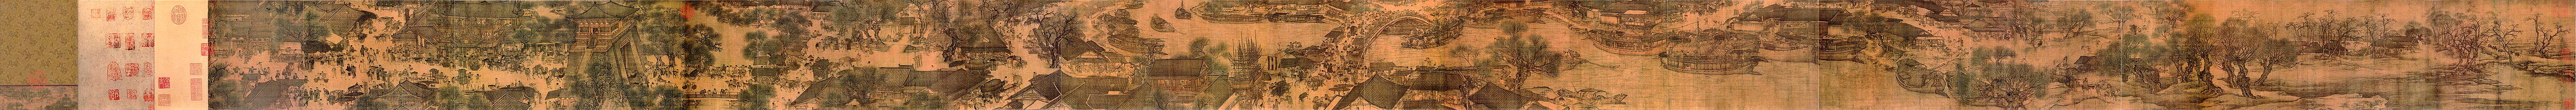 Vista panorámica de El festival Qingming junto al río, pintura de Zhang Zeduan, siglo XII.